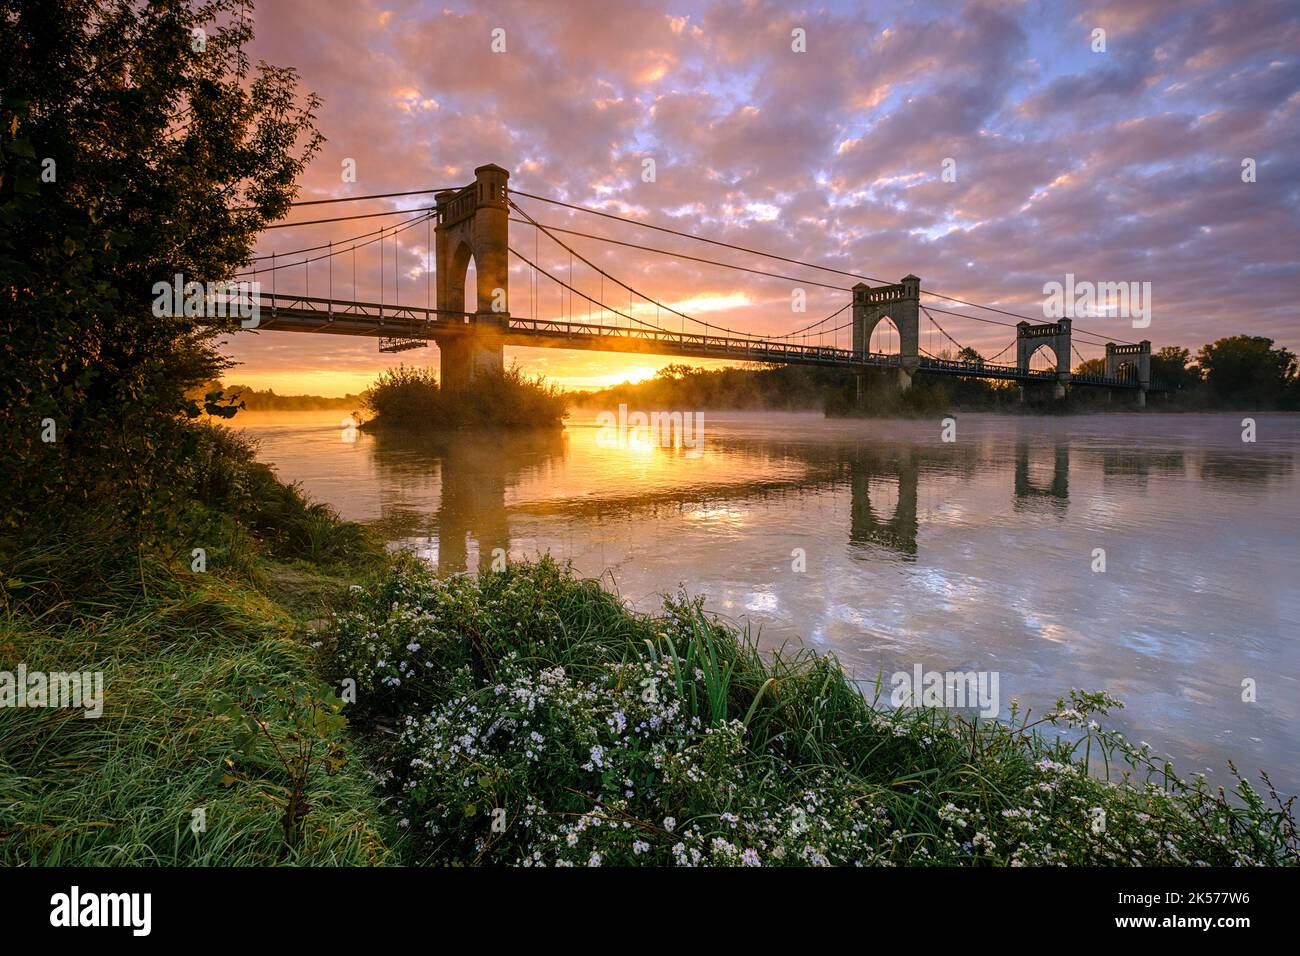 France, Indre et Loire, Vallée de la Loire sur la liste du patrimoine mondial de l'UNESCO , le pont suspendu de Langeais sur la Loire Banque D'Images